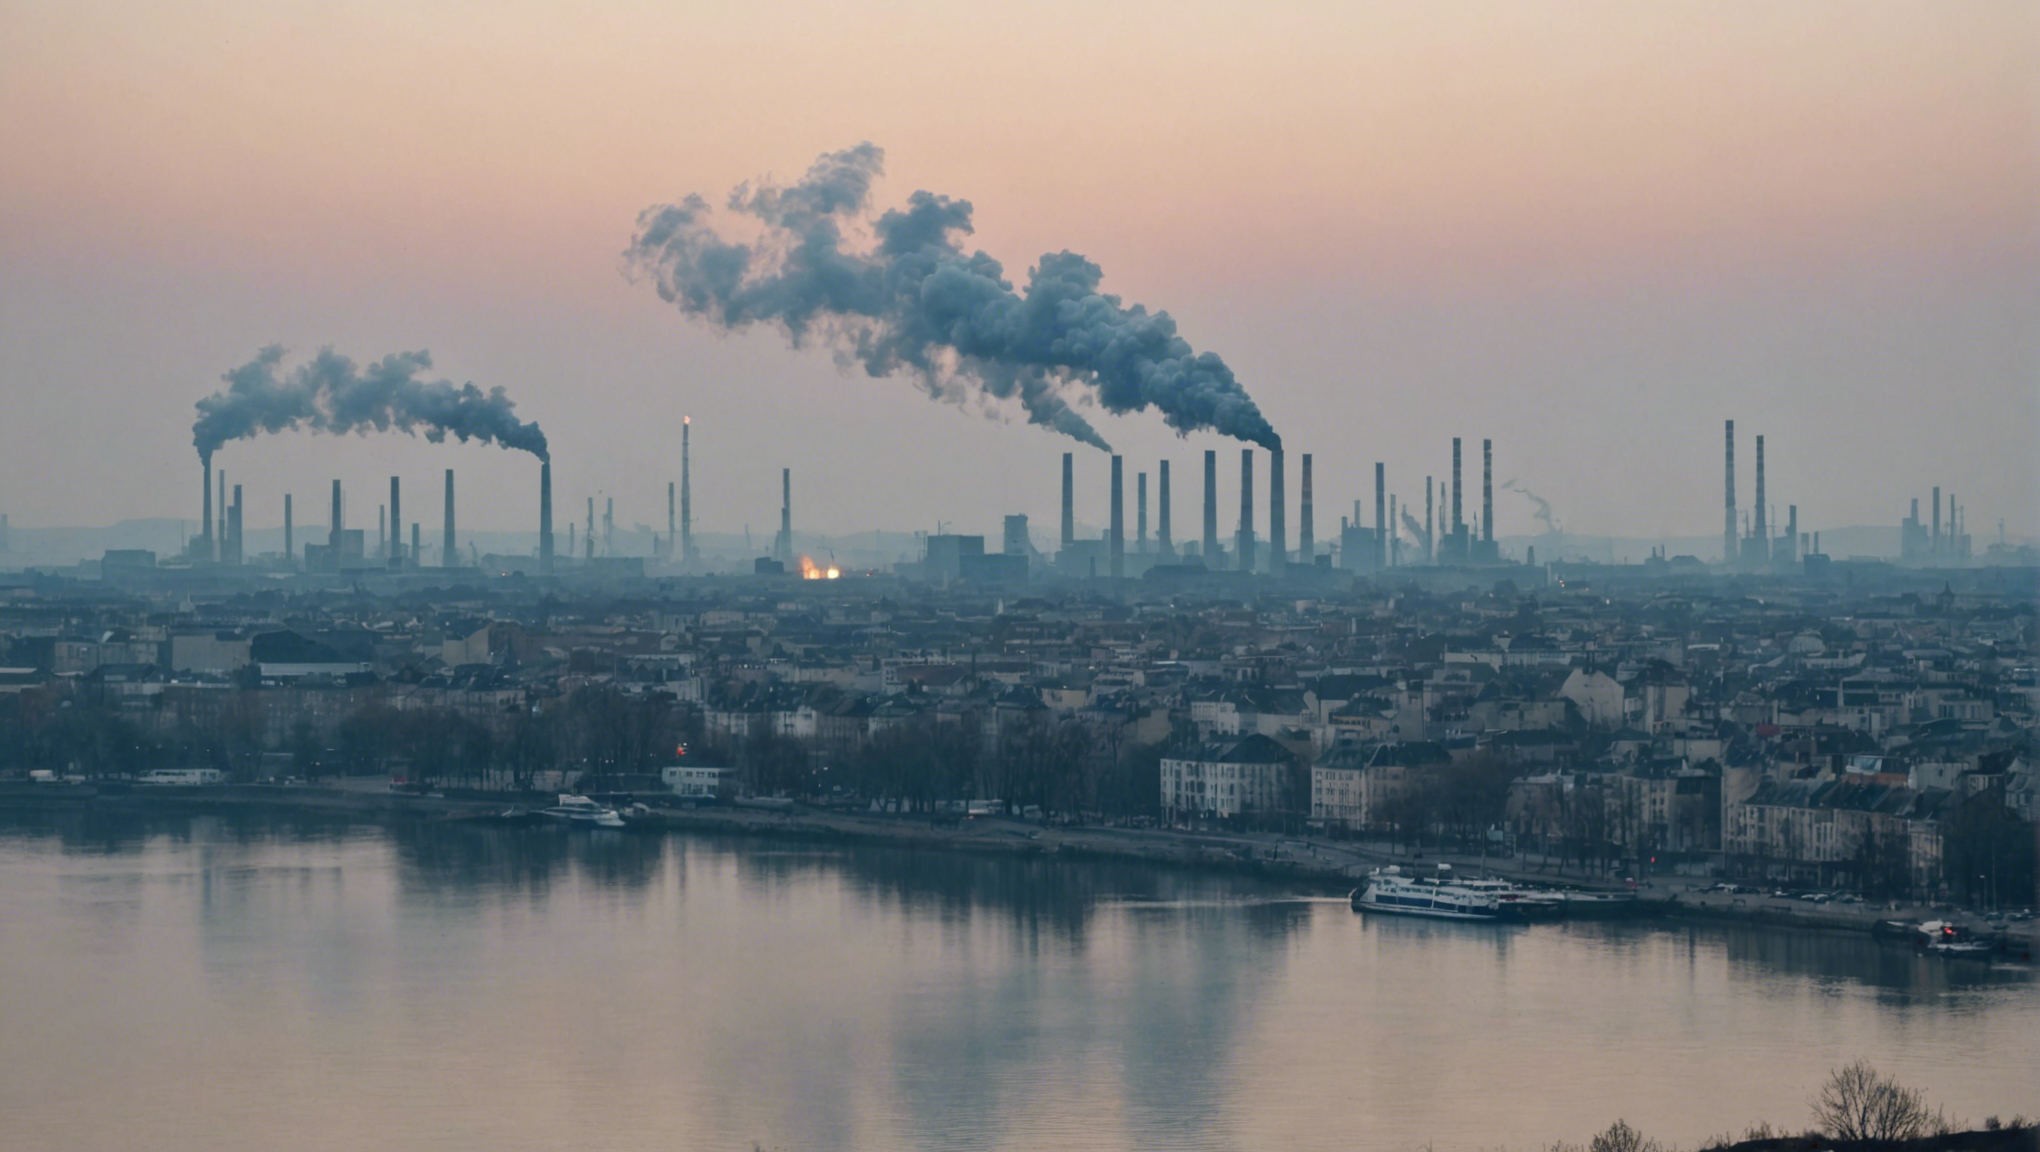 découvrez les principaux polluants atmosphériques et leurs effets sur l'environnement dans cet article sur la pollution atmosphérique.